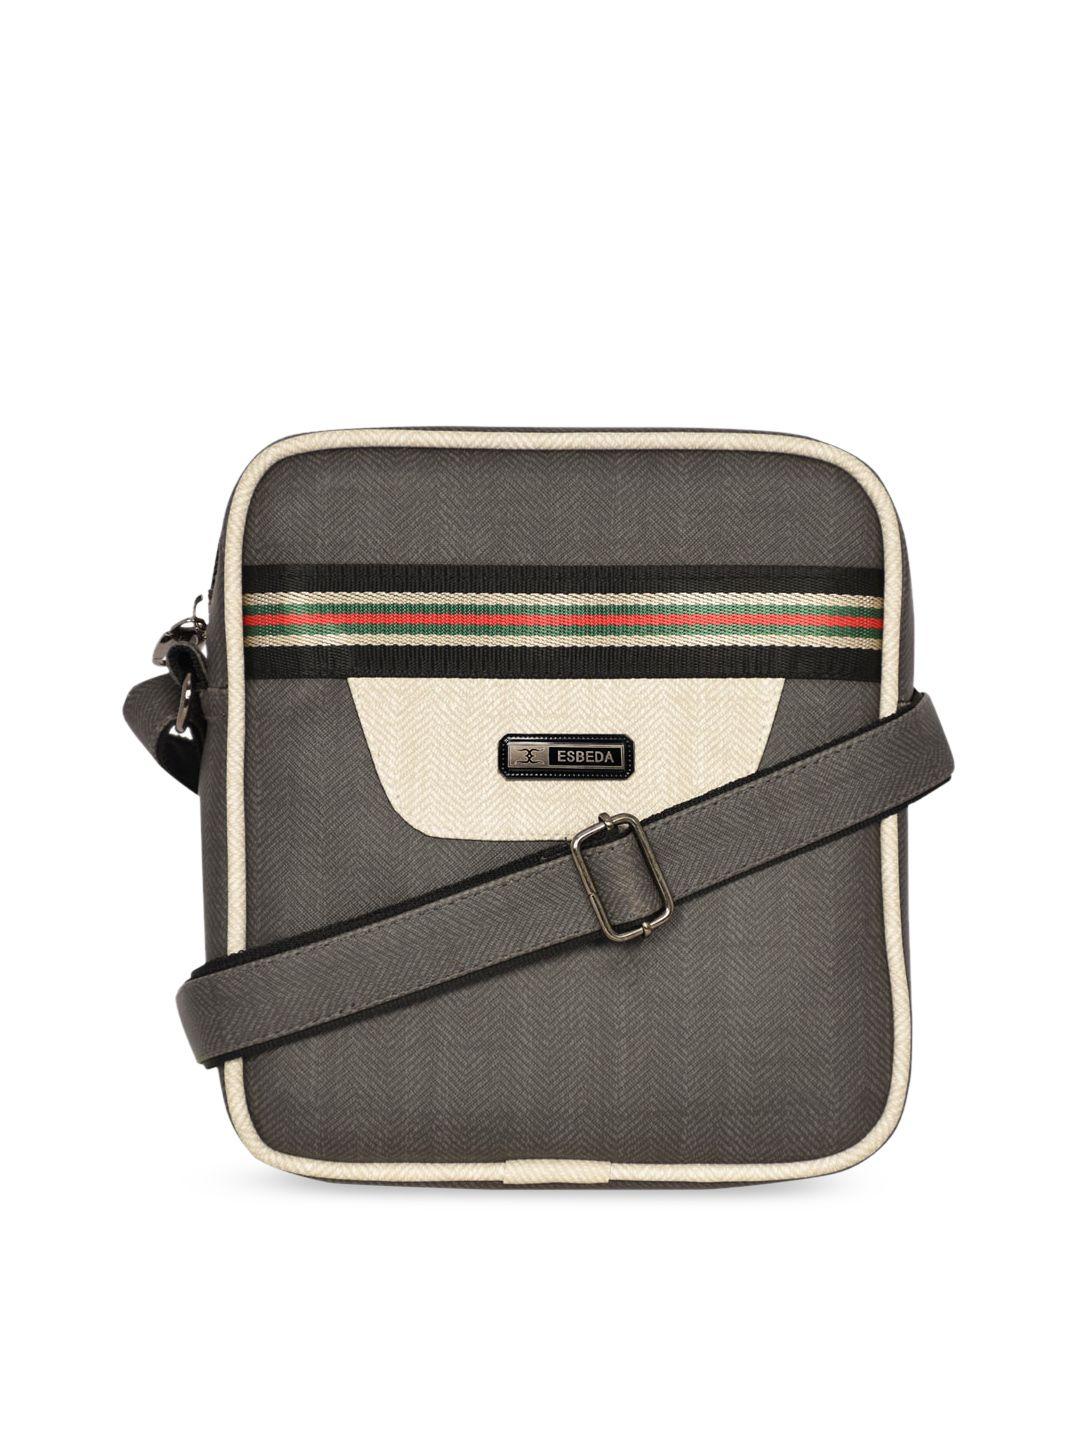 esbeda grey pu structured sling bag